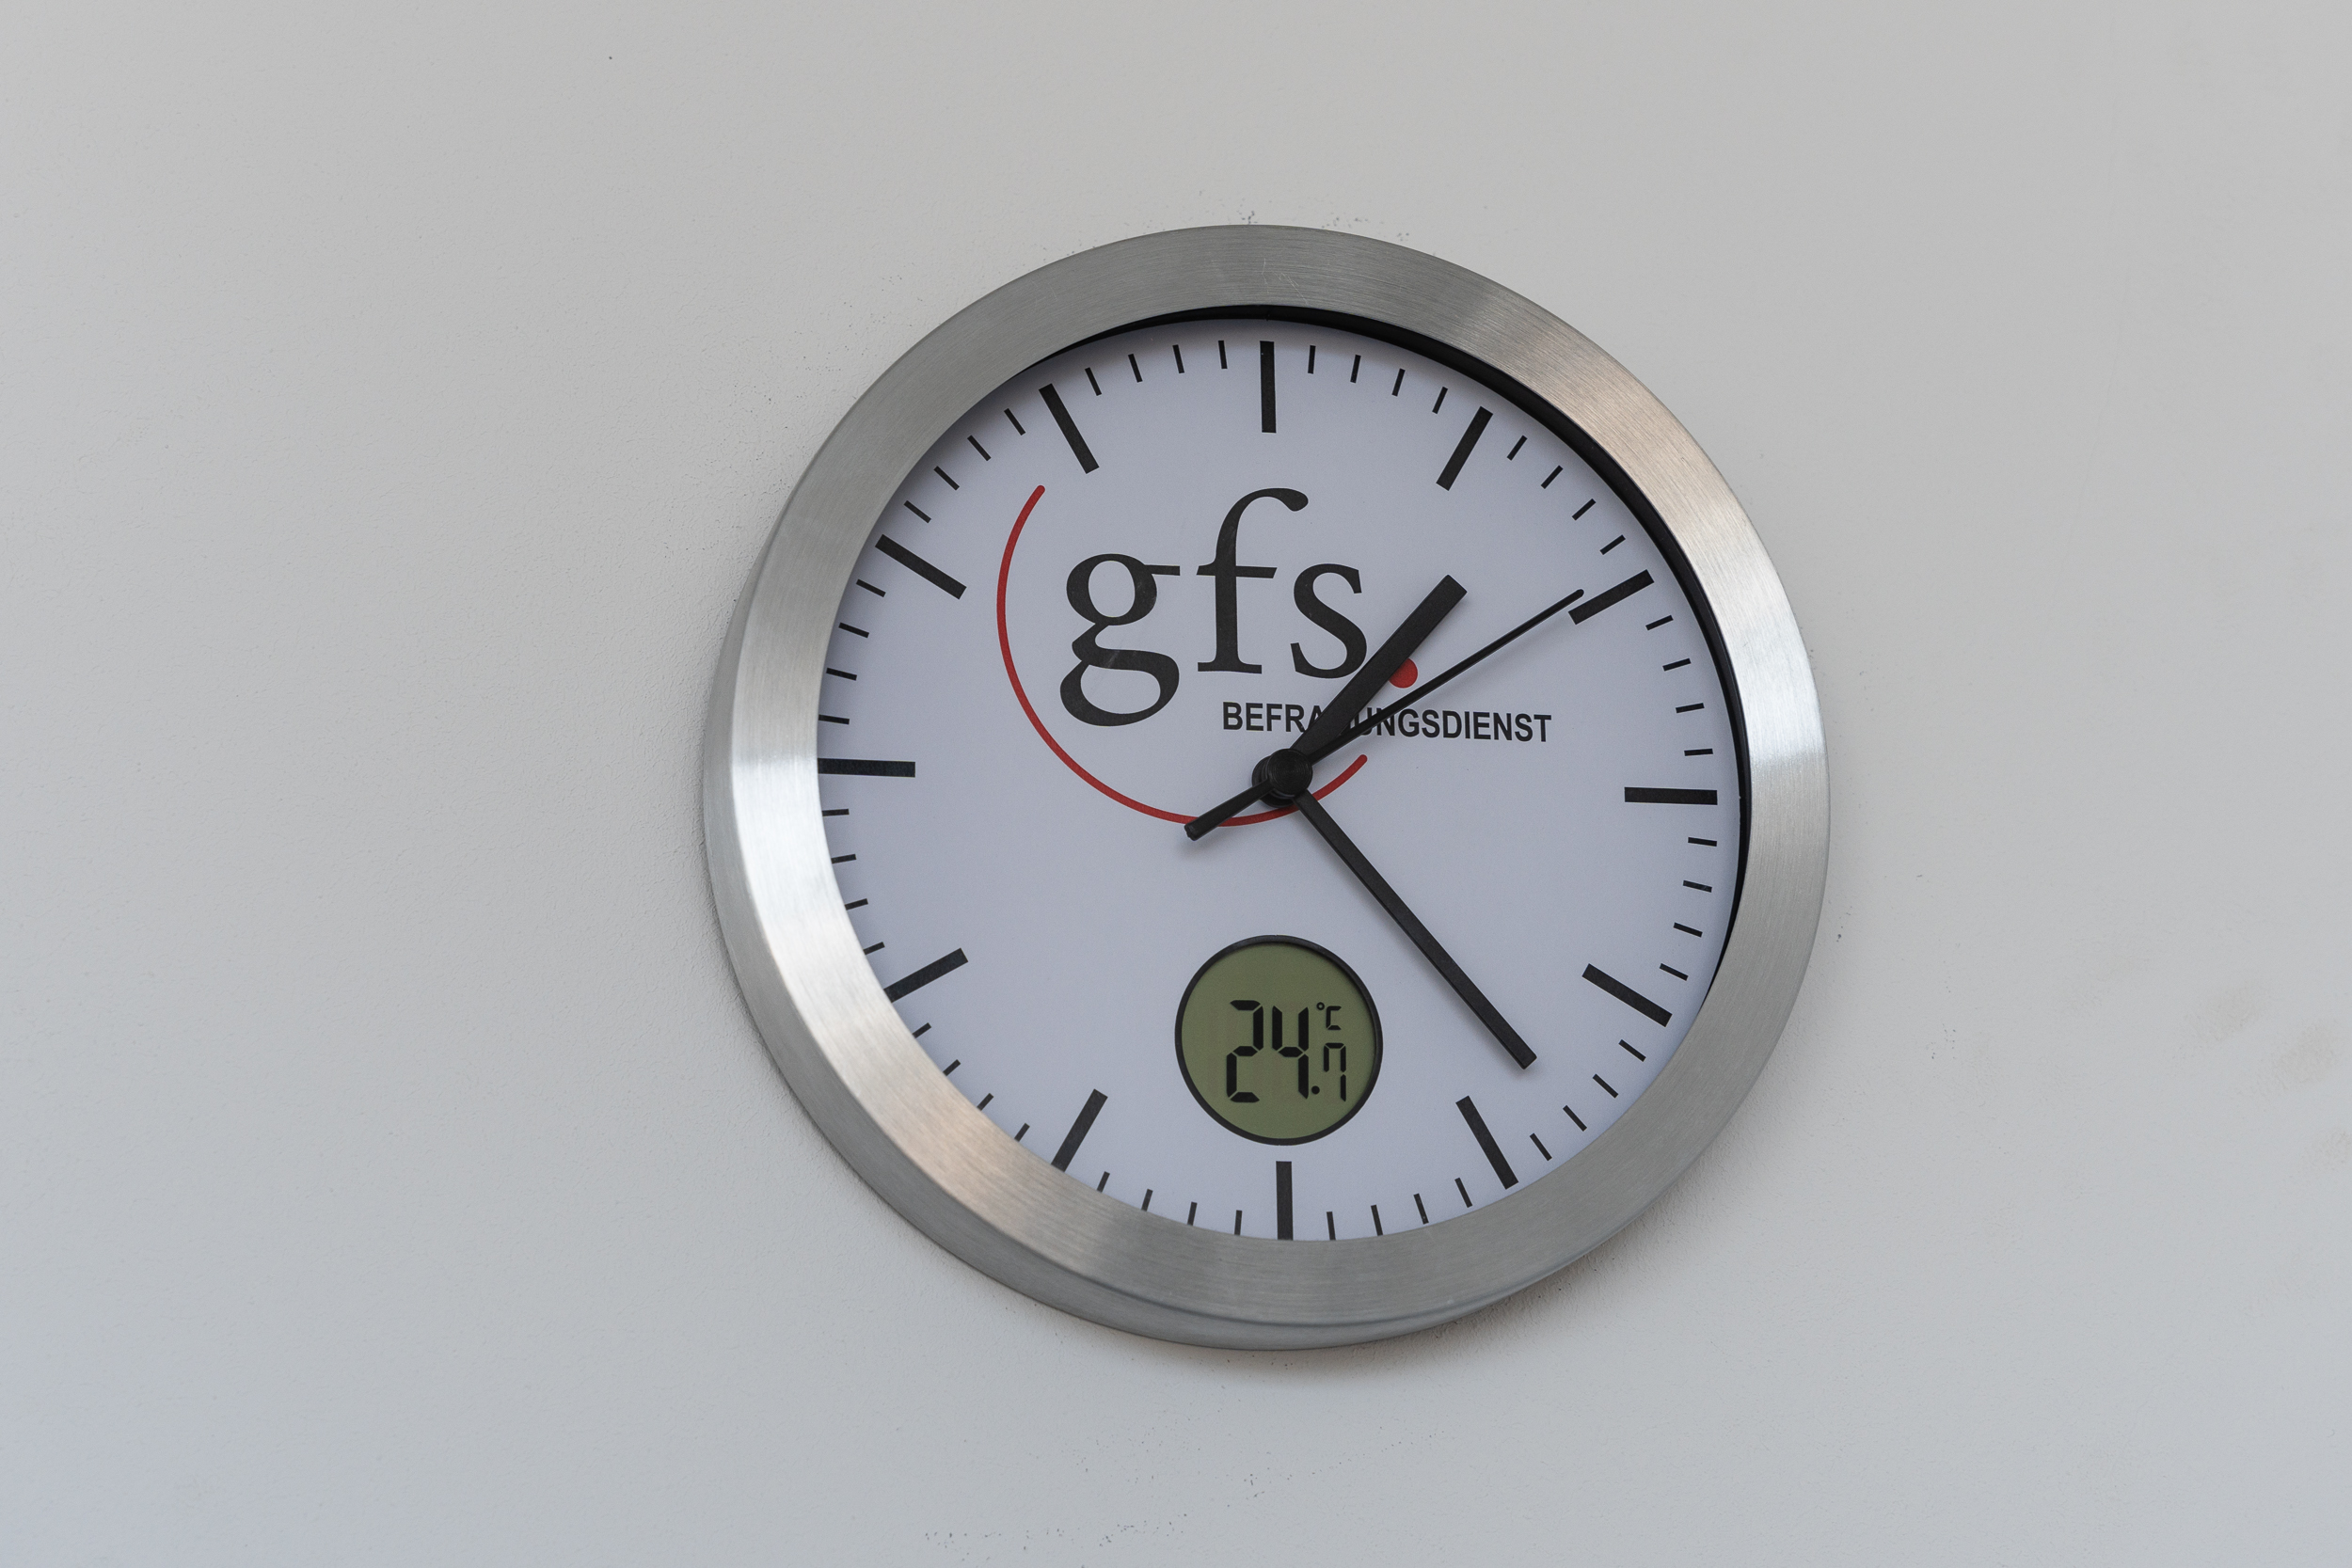 GFSと書かれた時計